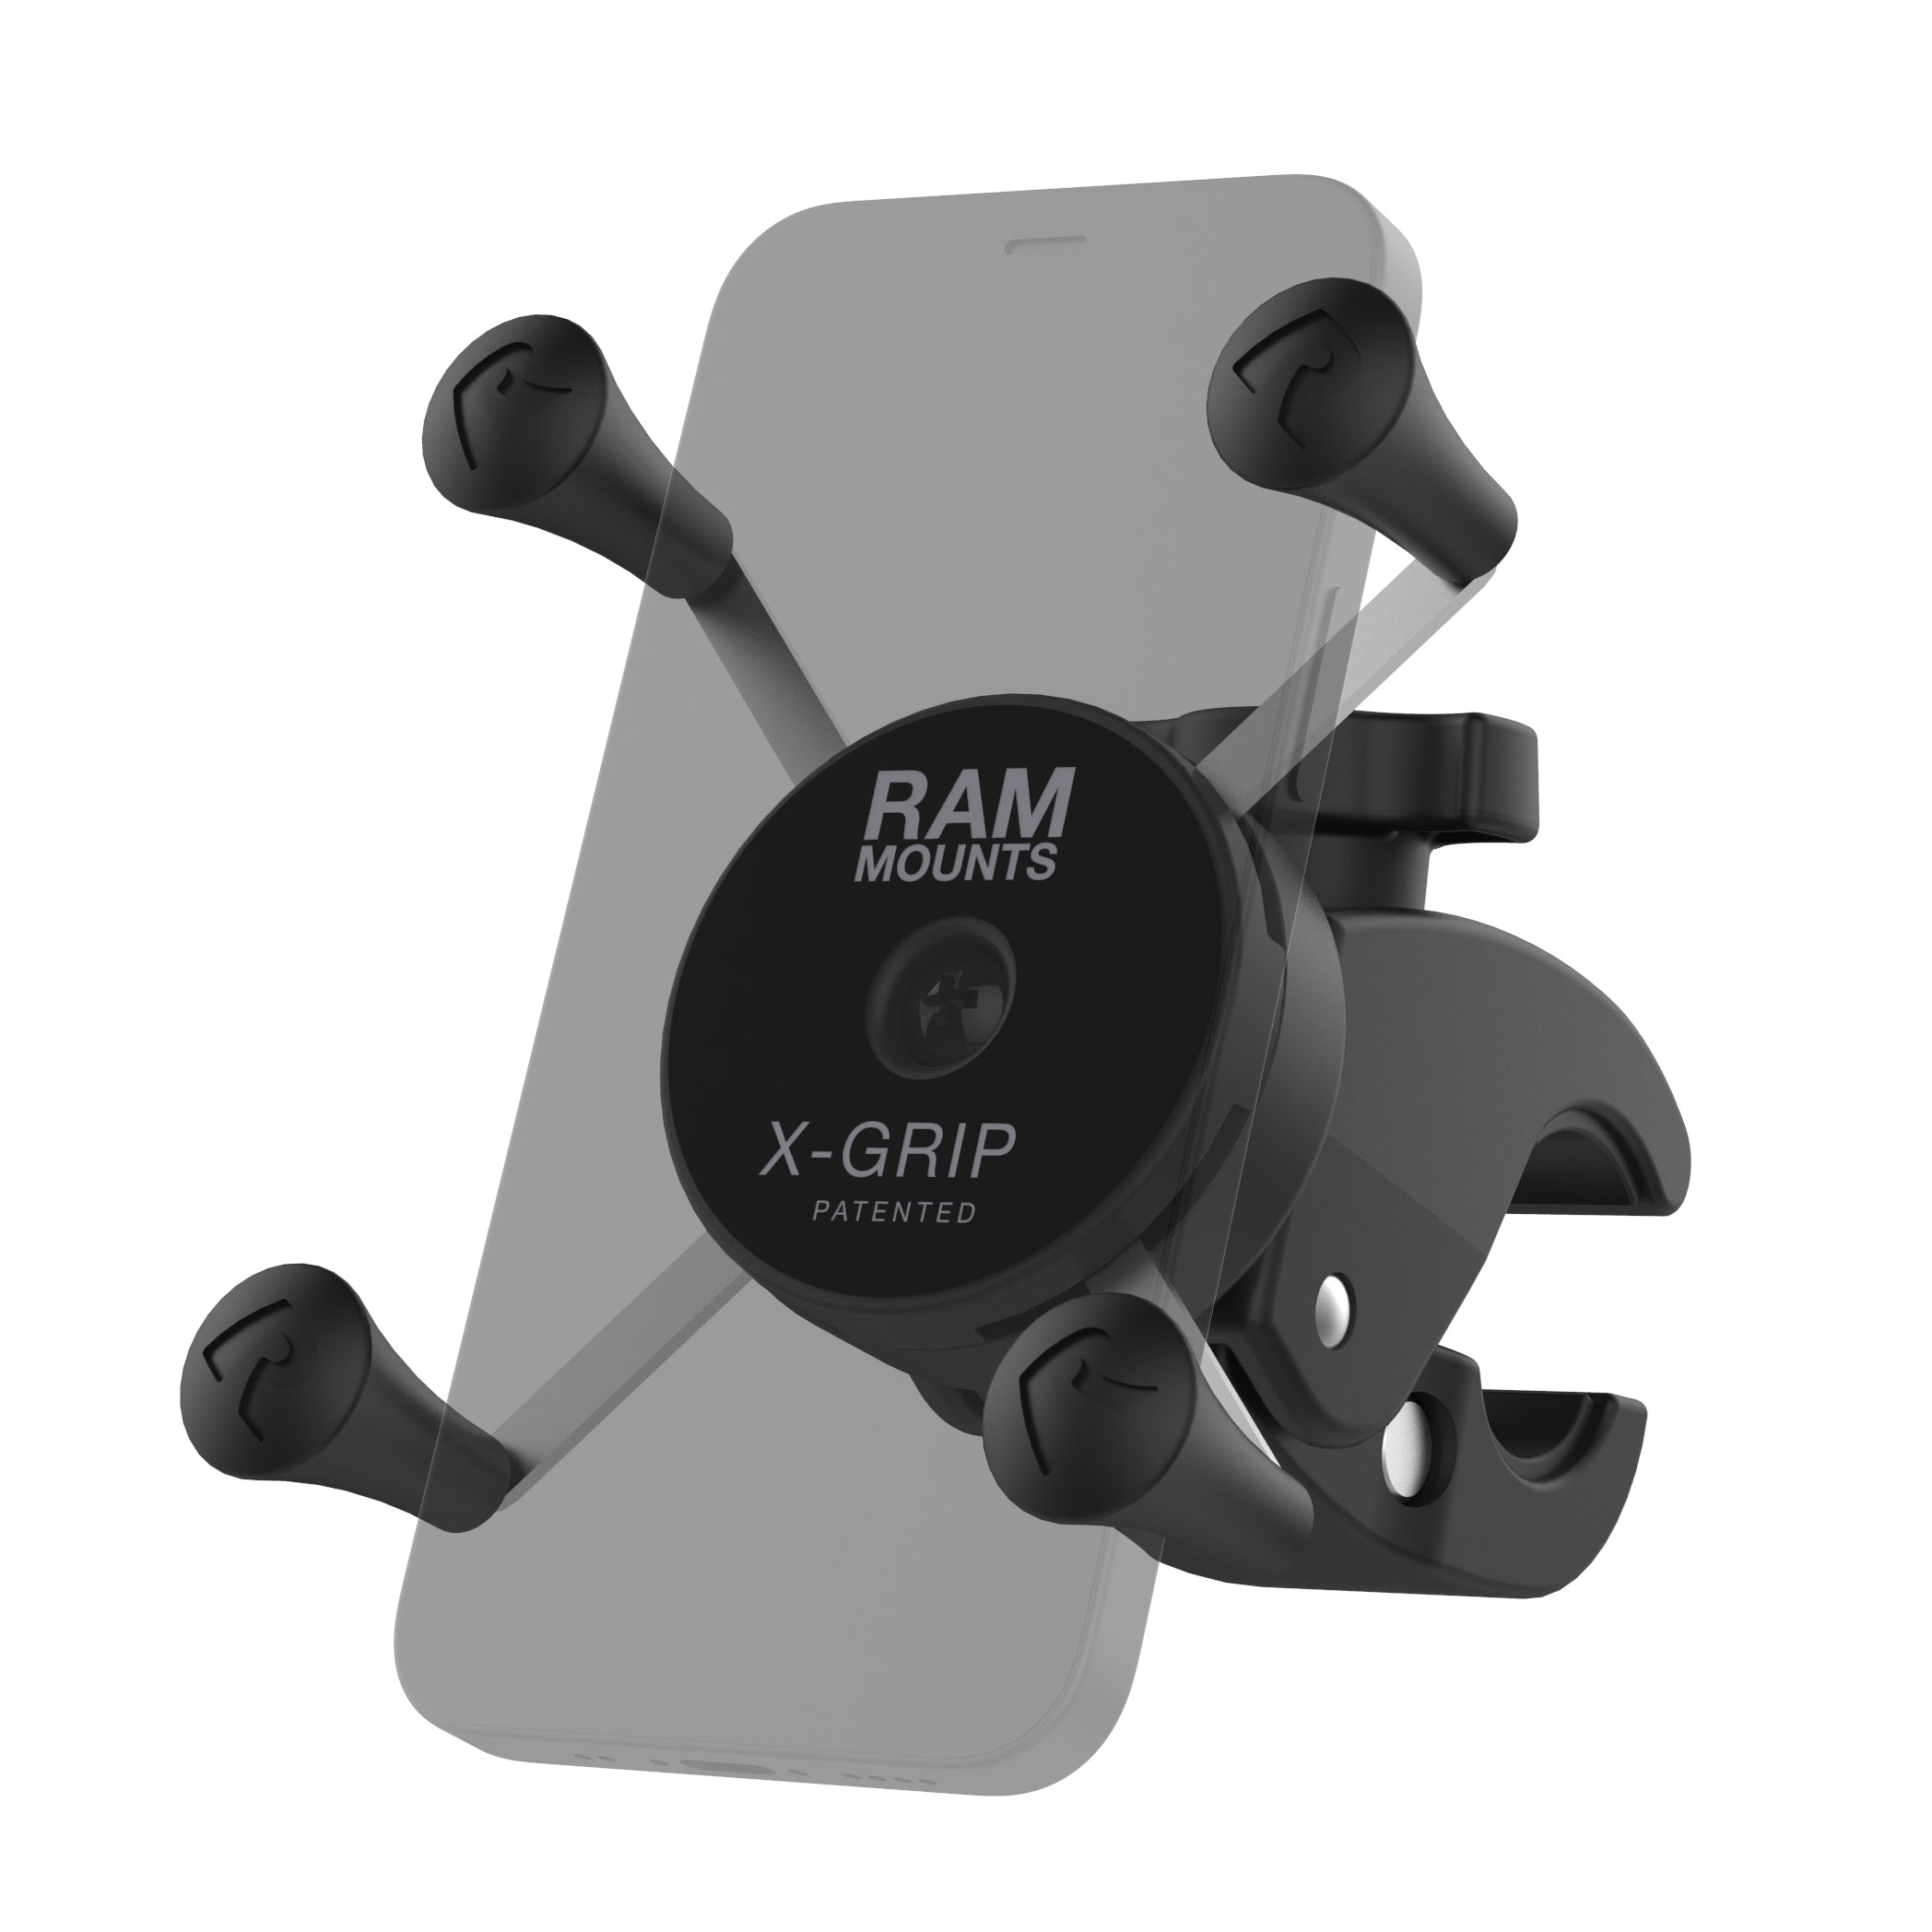  RAM Mounts X-Grip Rubber Cap 4-Pack Replacement RAP-UN